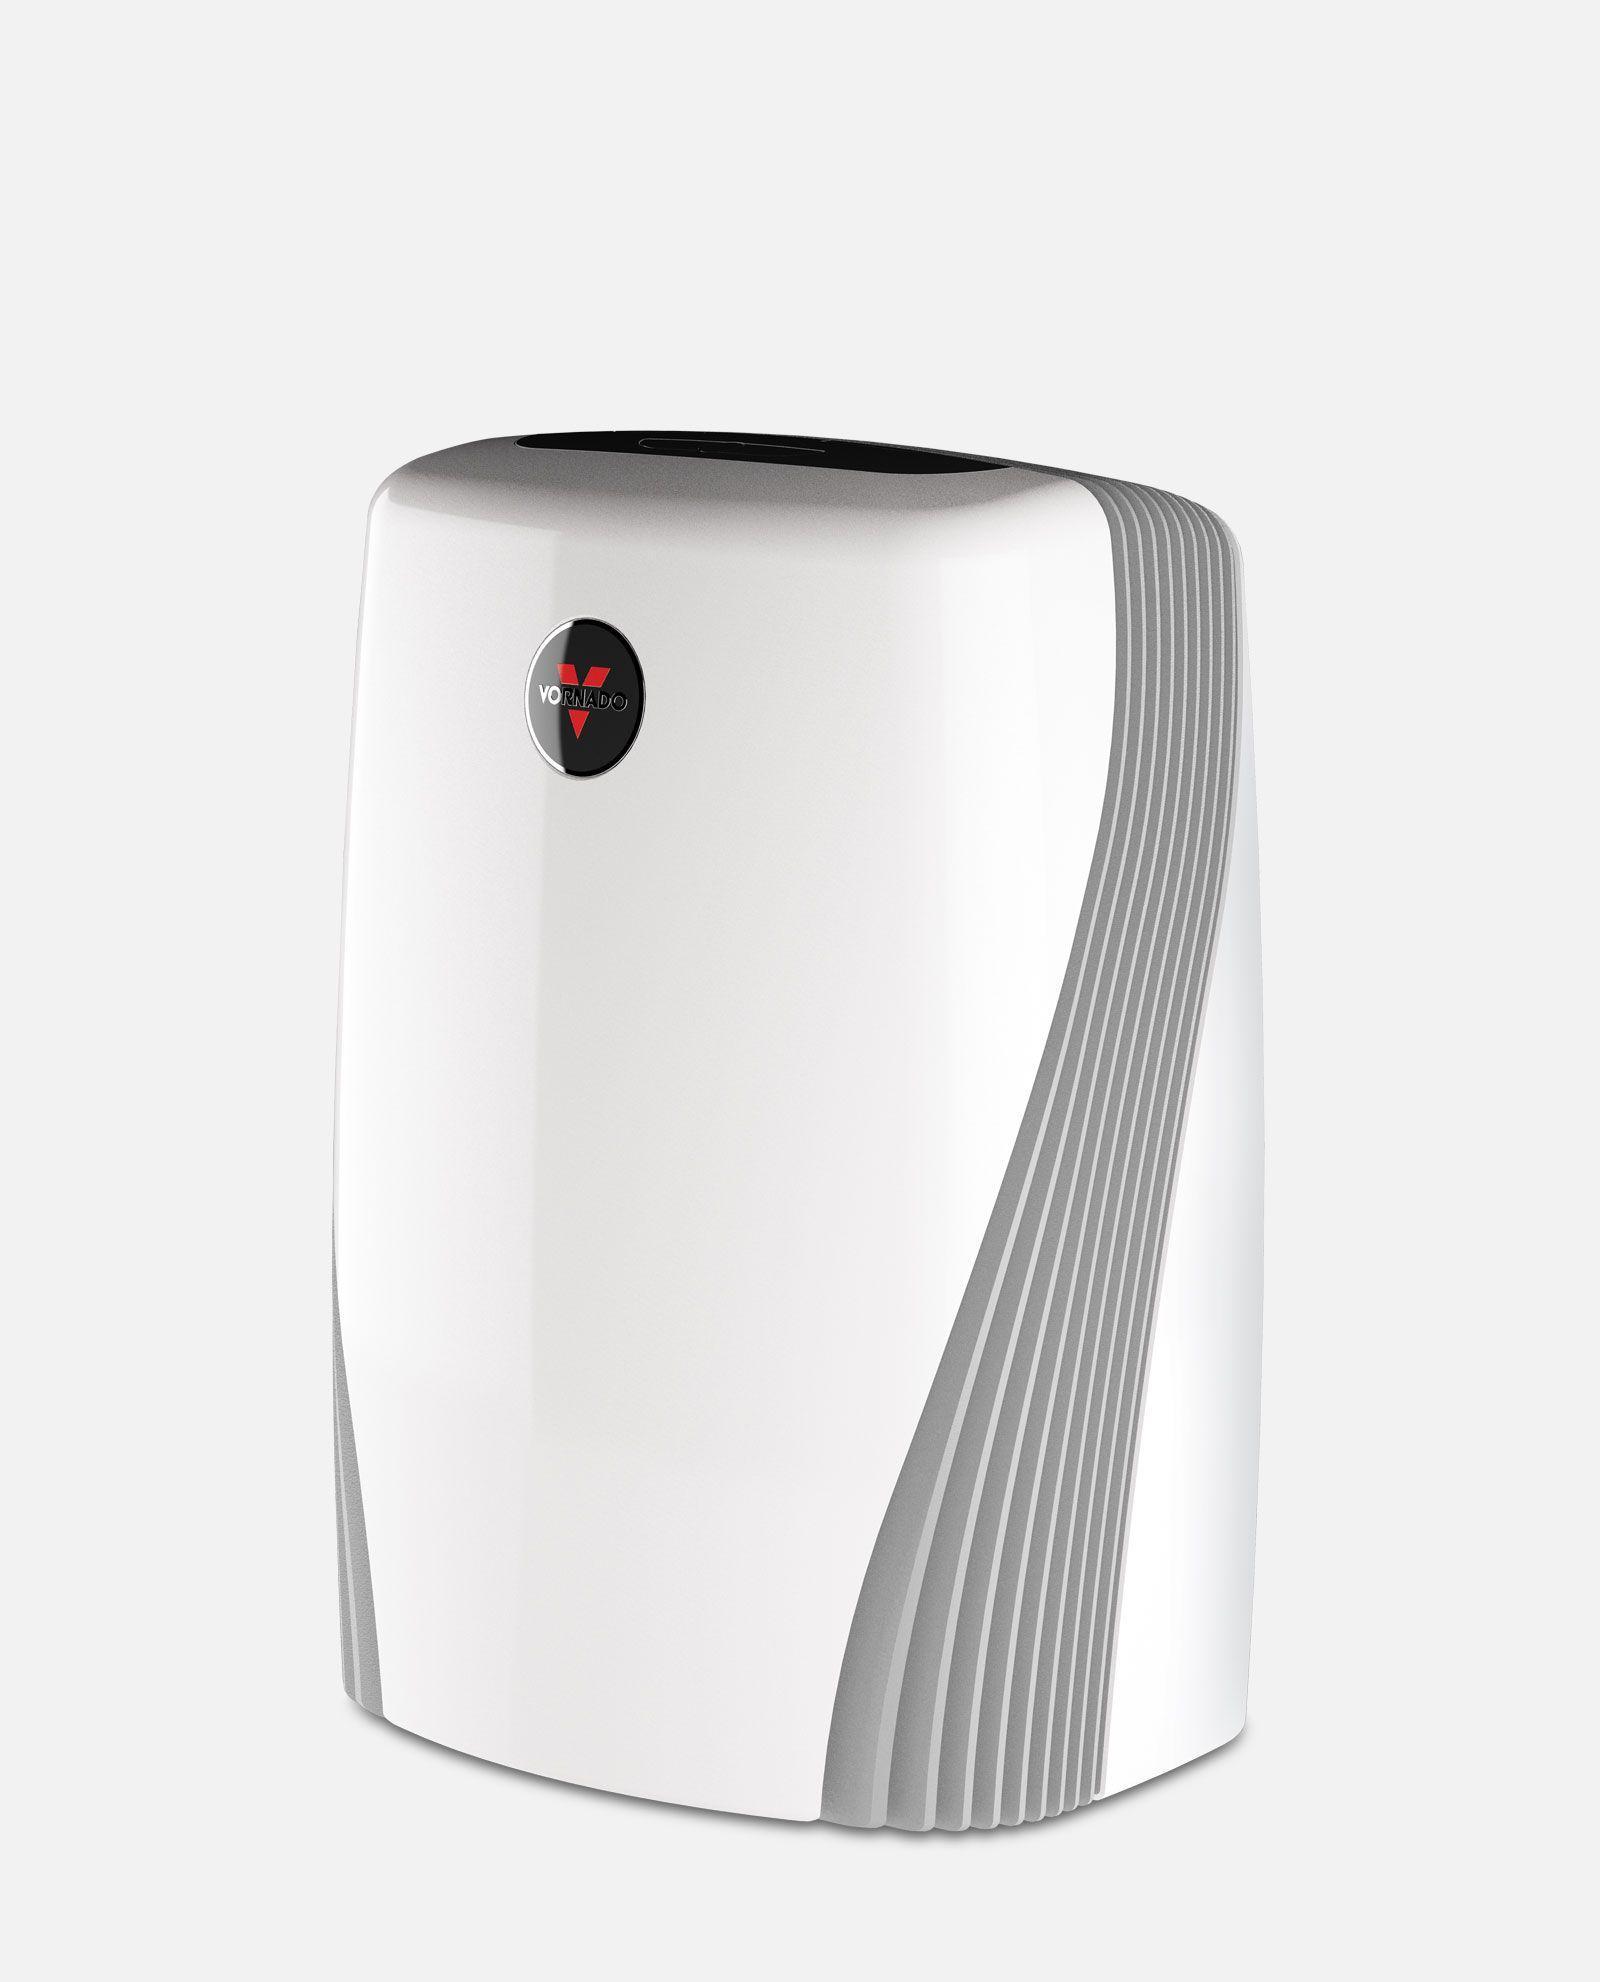 White PCO200 air purifier